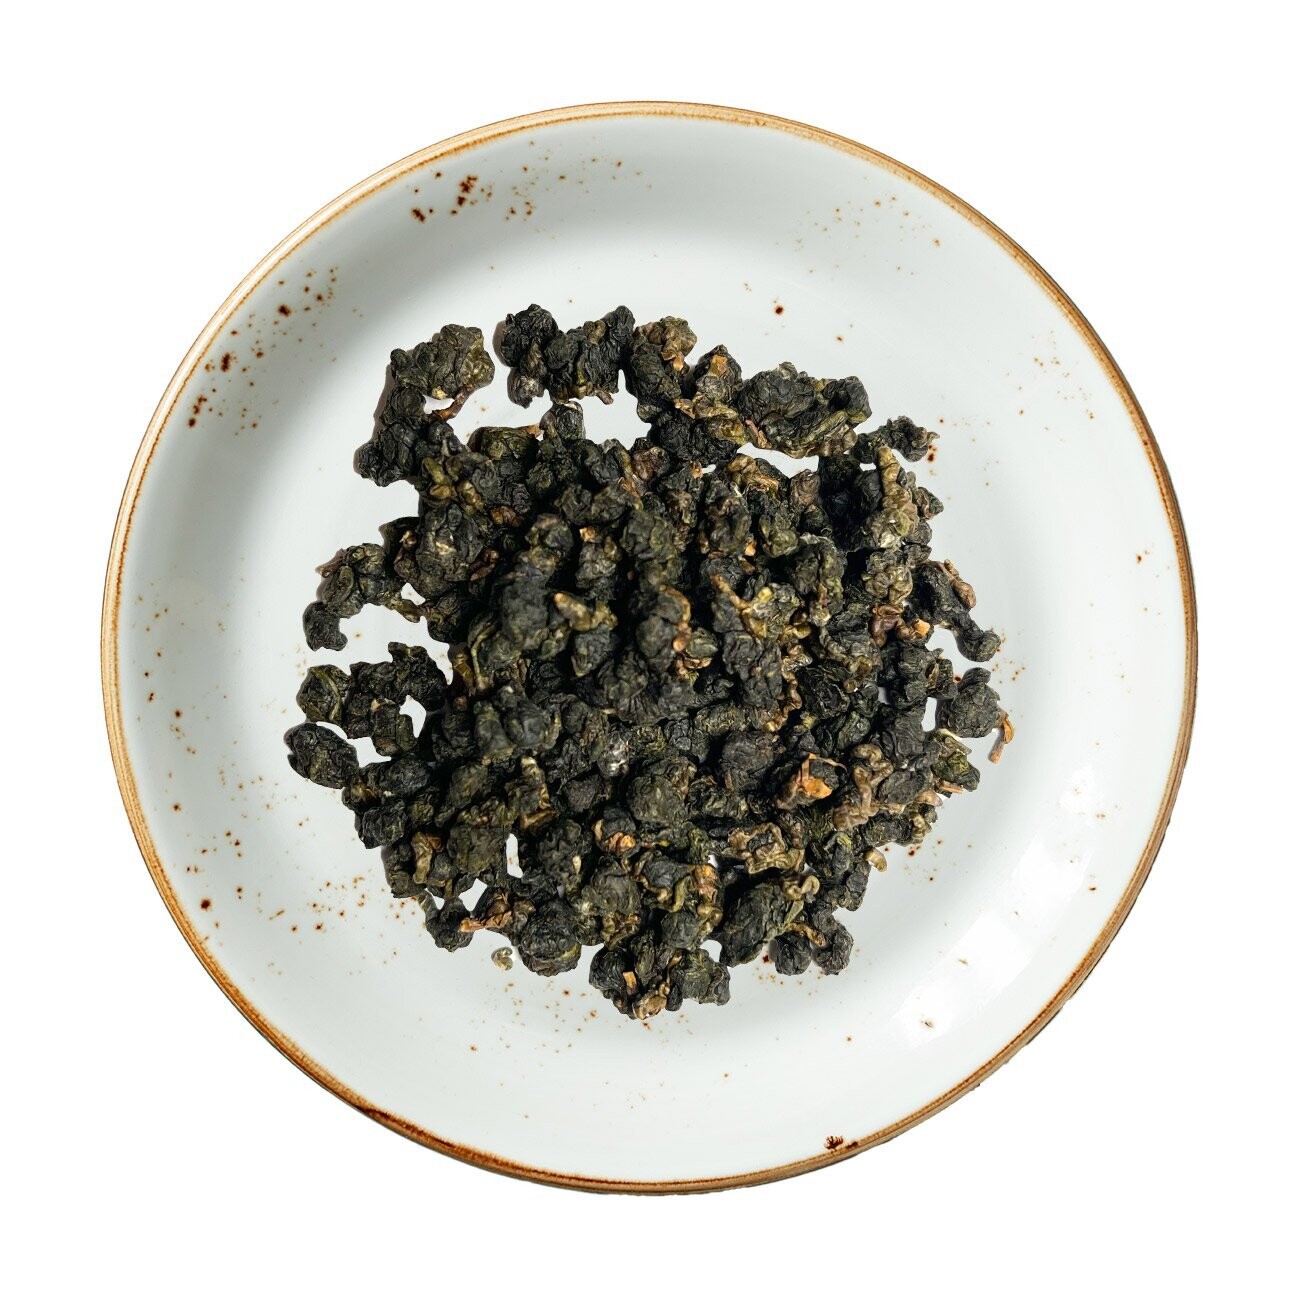 Alishan Milk Oolong Tea, Size: One Ounce (28 grams)